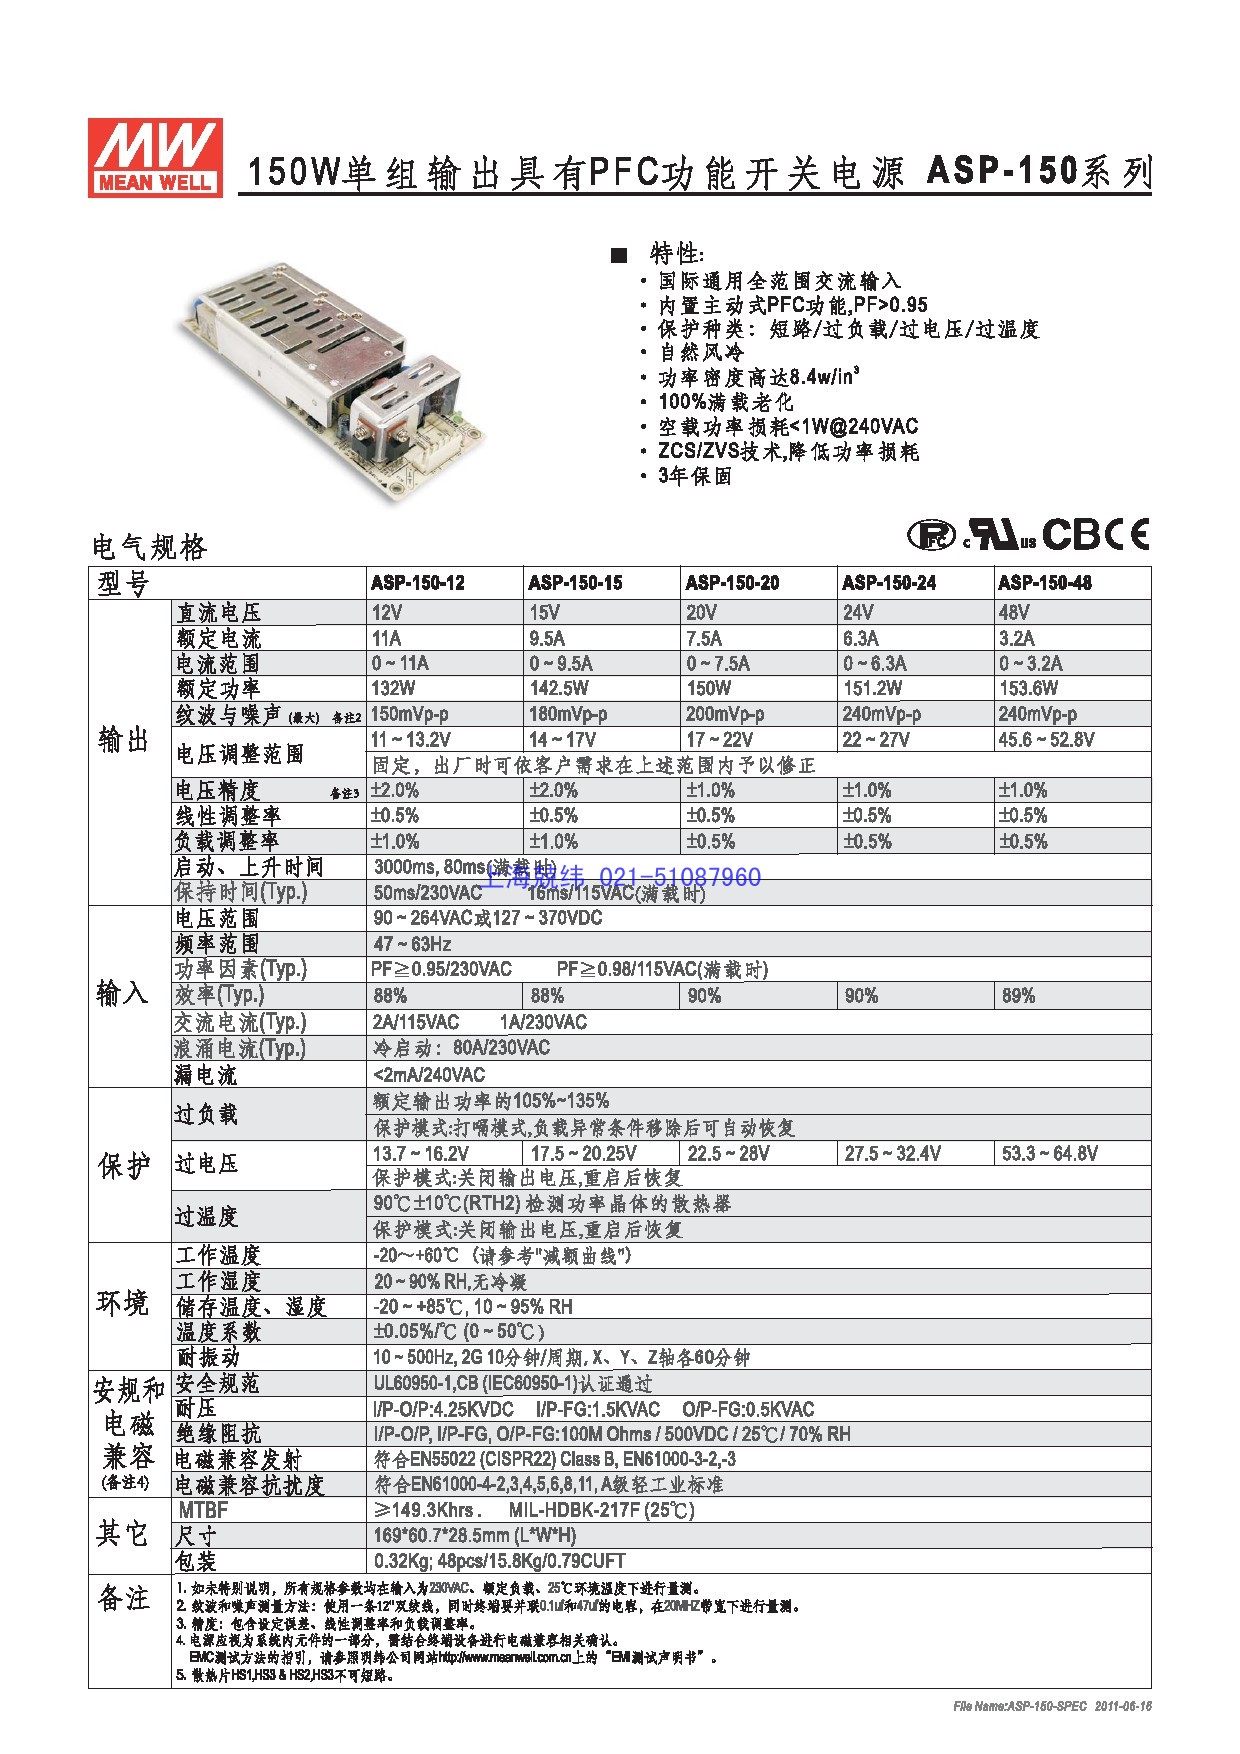 上海兢纬供应无外壳裸板电源(通用PCB型)电源系列ASP-150详细规格书